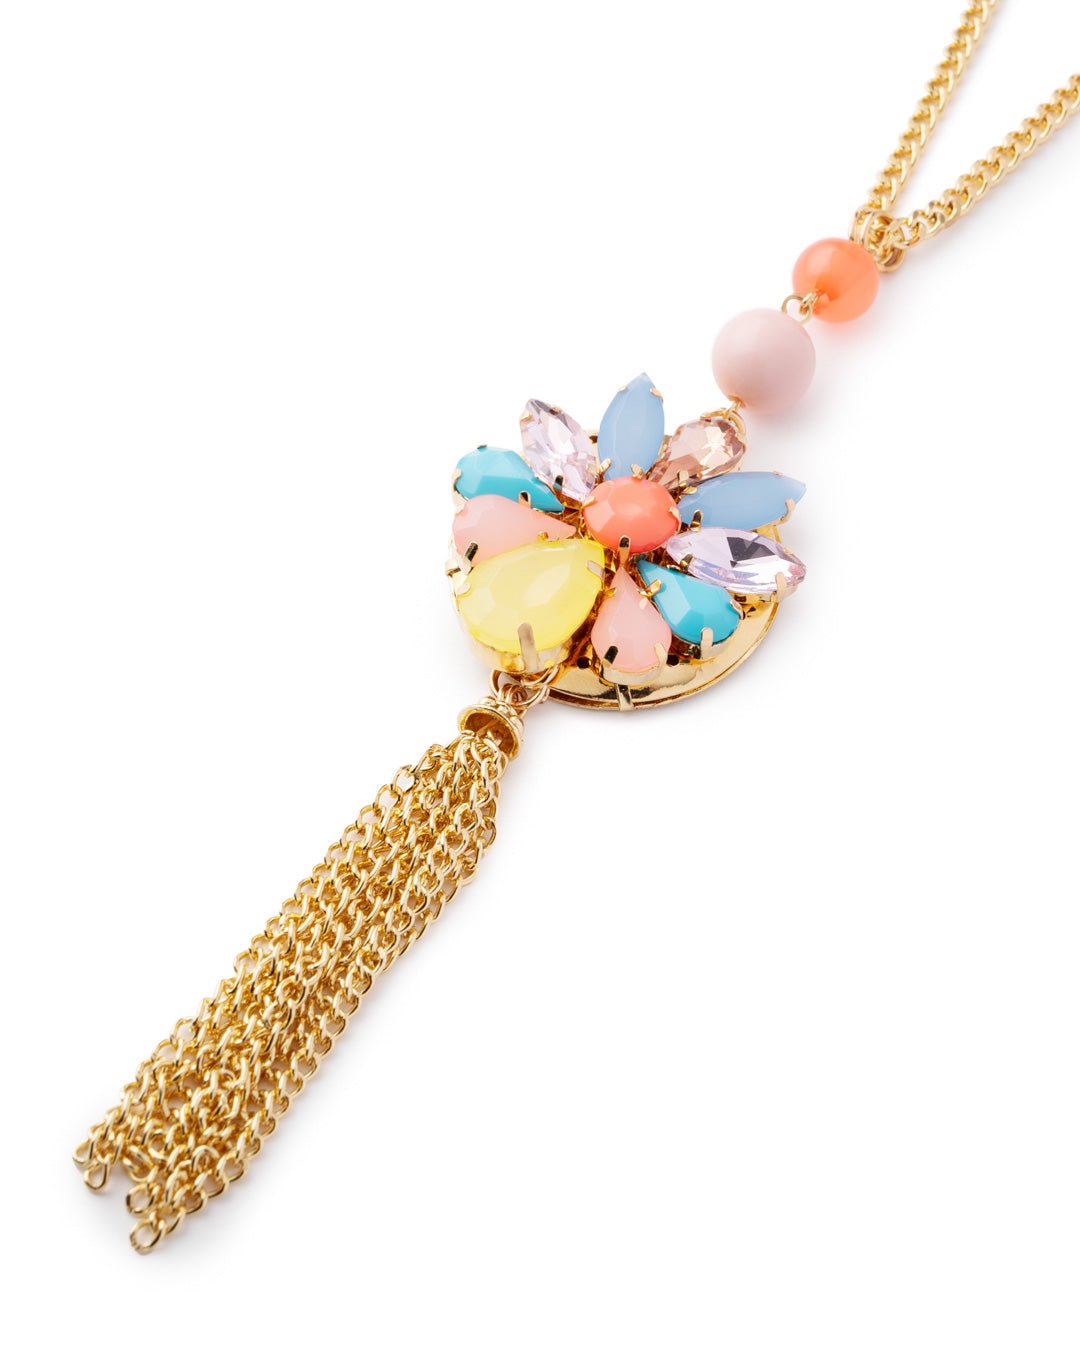 Collana lunga a catena con pendente a fiore in vetro multicolore, con frange - Mya Accessories